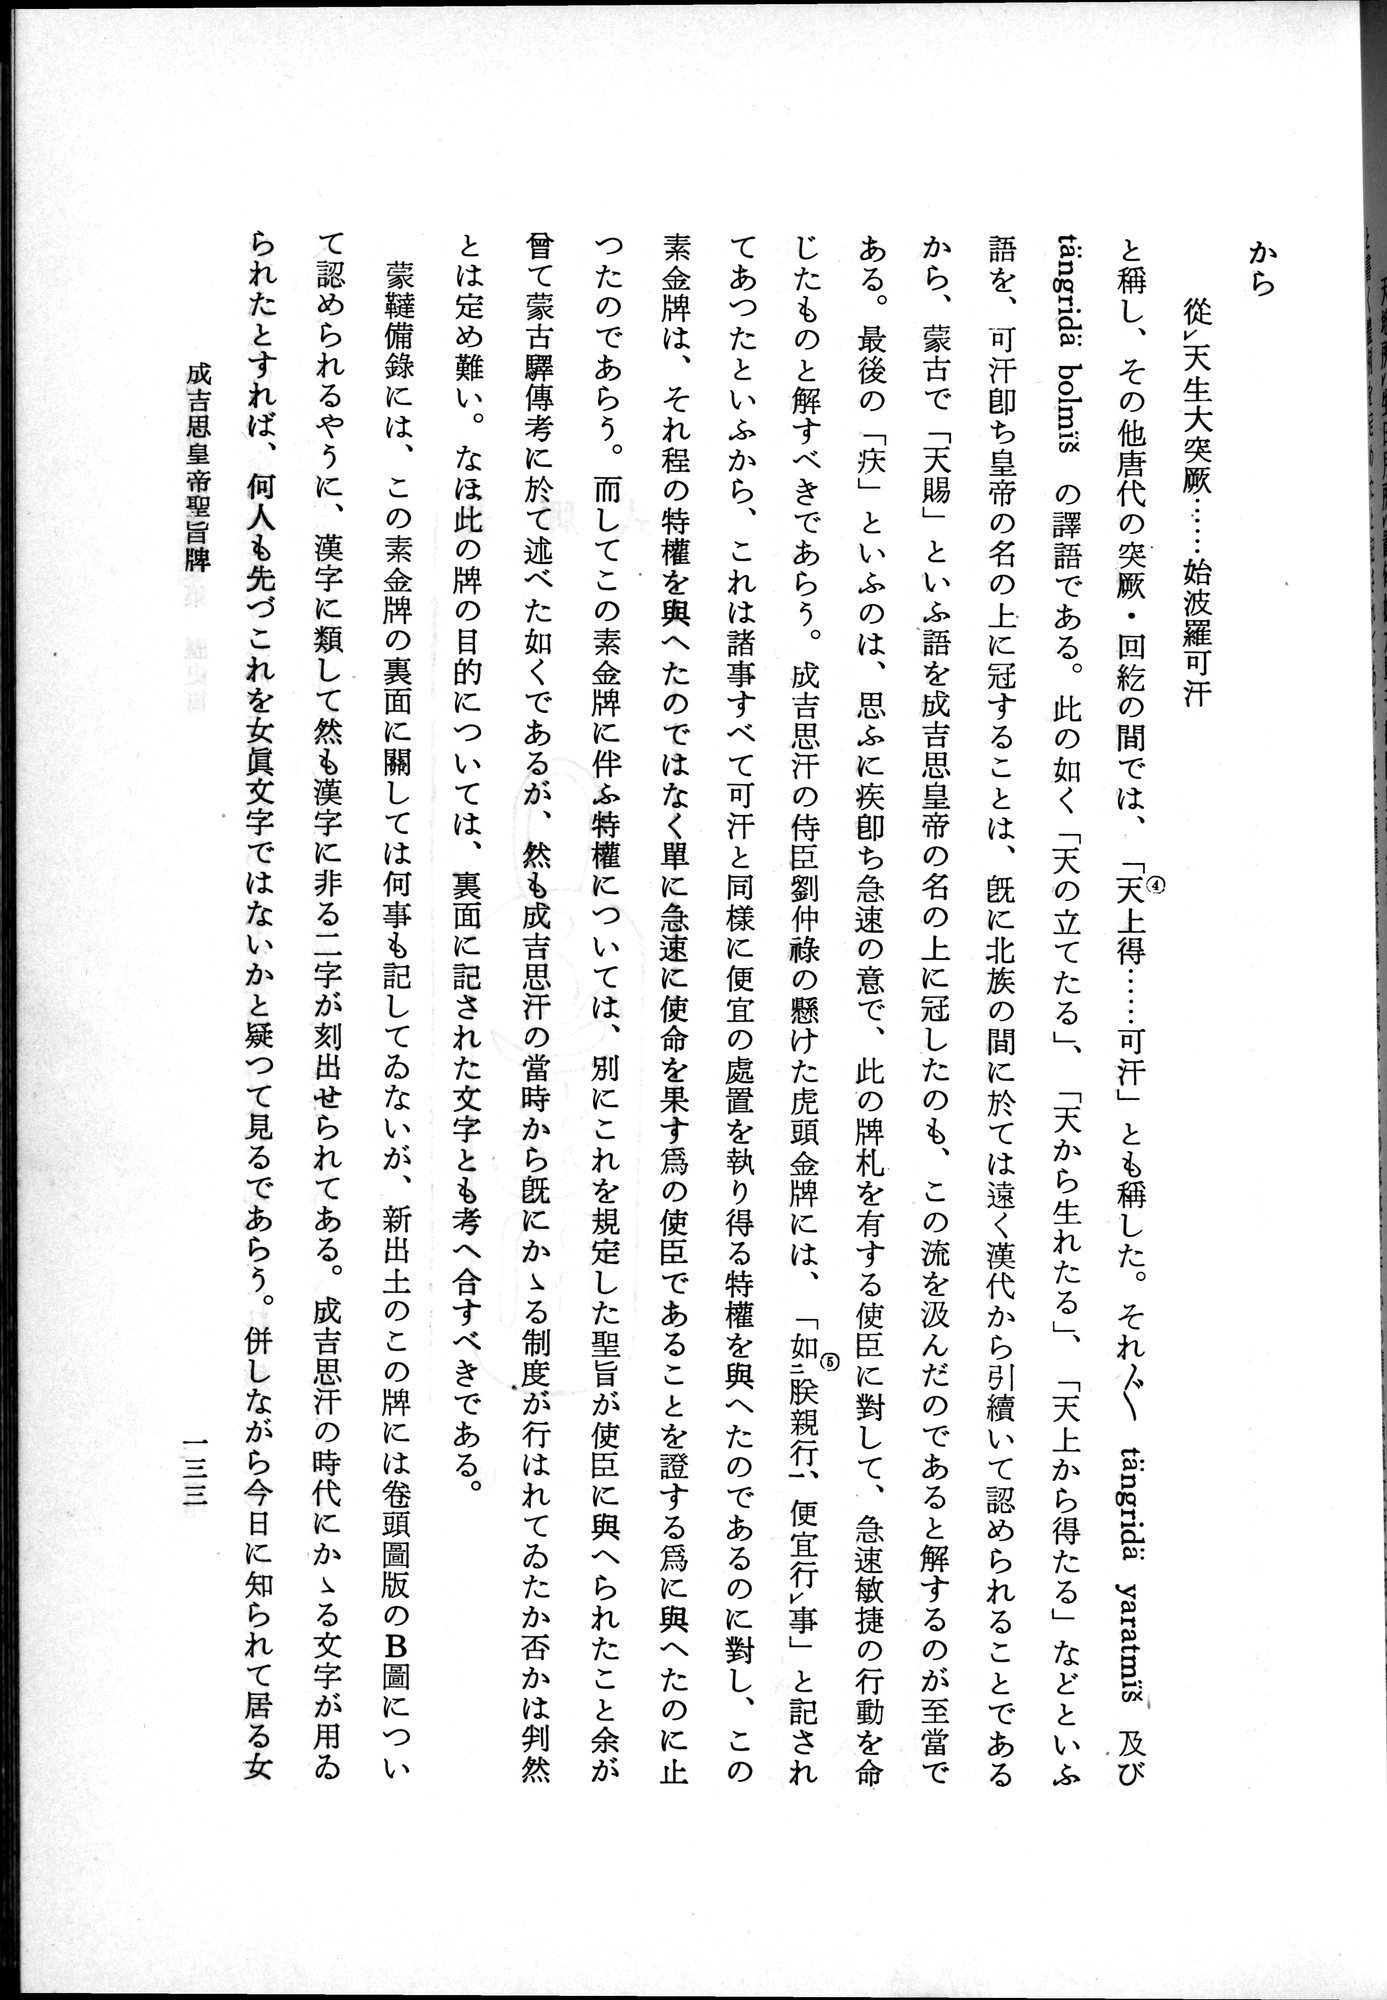 羽田博士史学論文集 : vol.1 / Page 171 (Grayscale High Resolution Image)